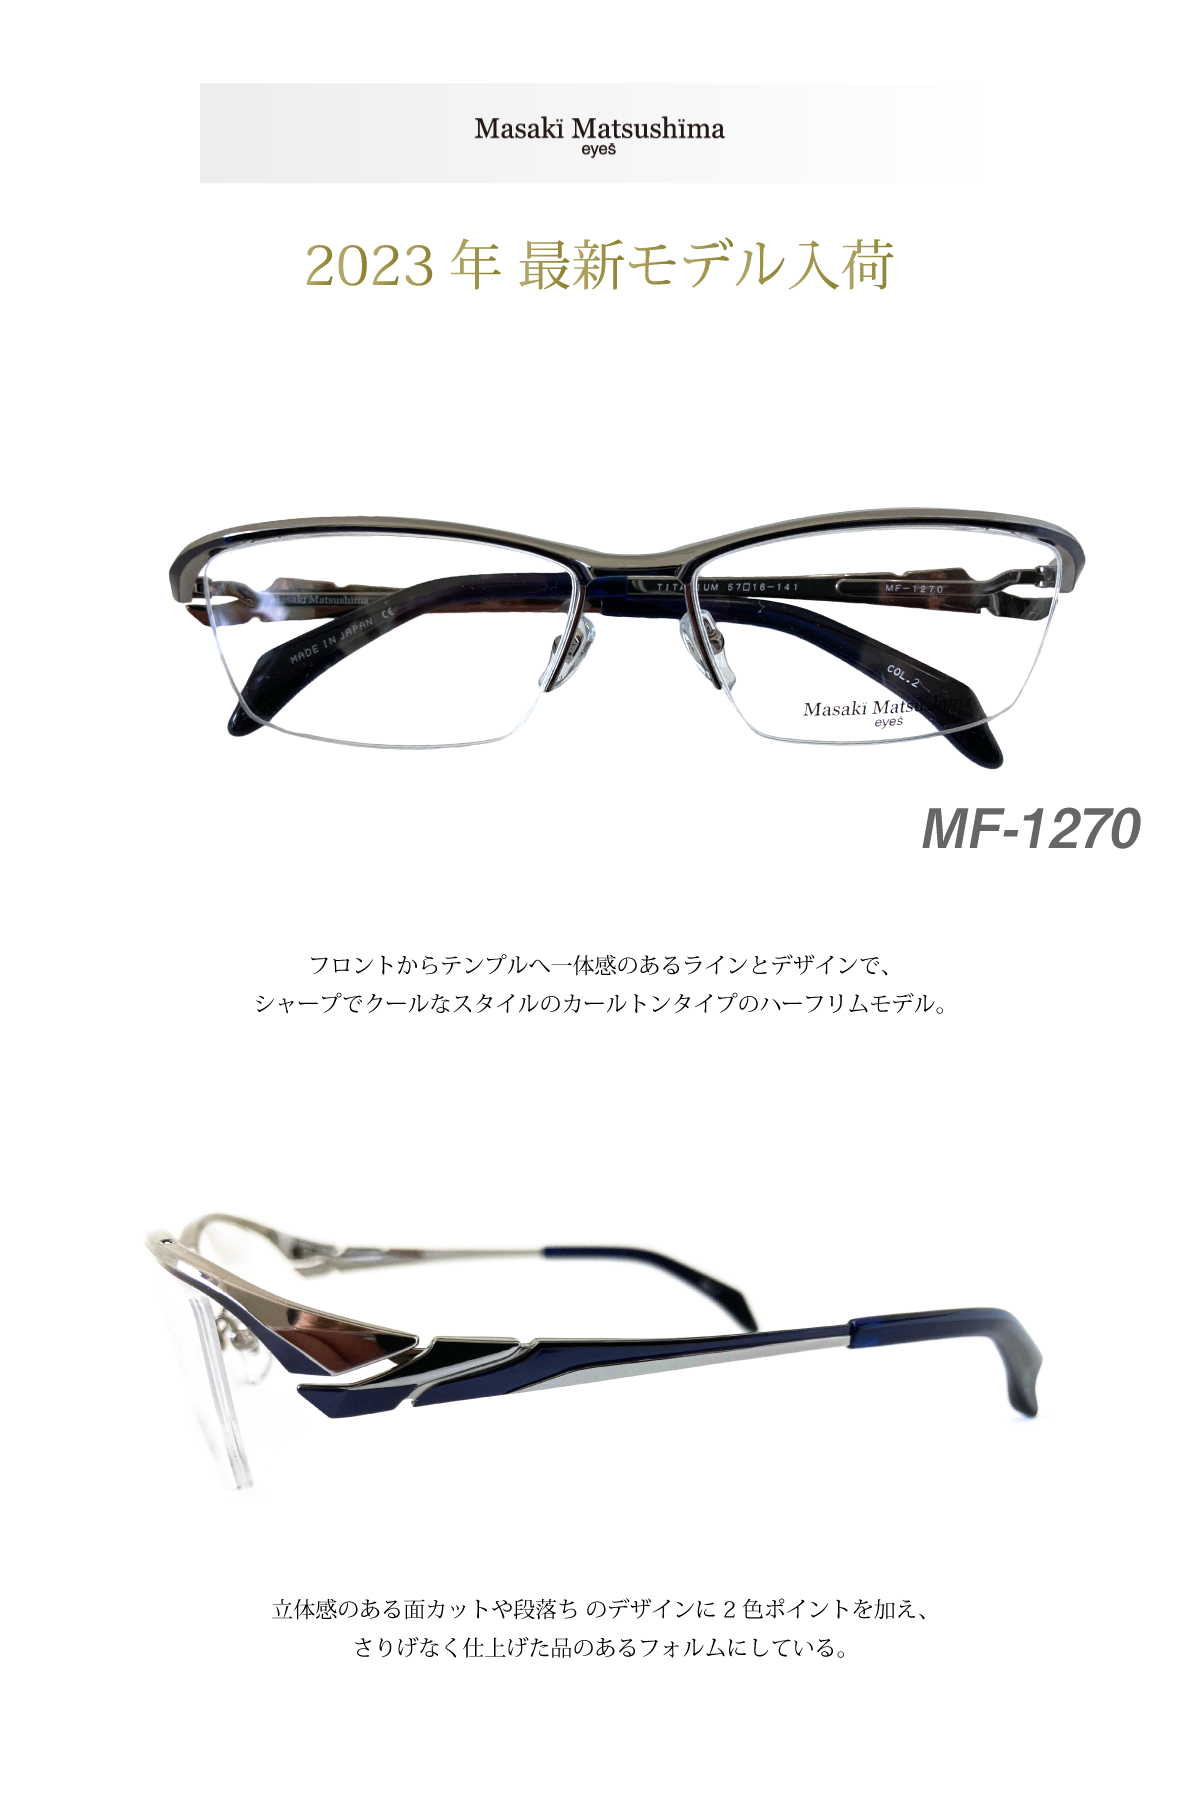 Masaki Matsushima マサキマツシマ MF-1270 度付き メガネ ハーフリム